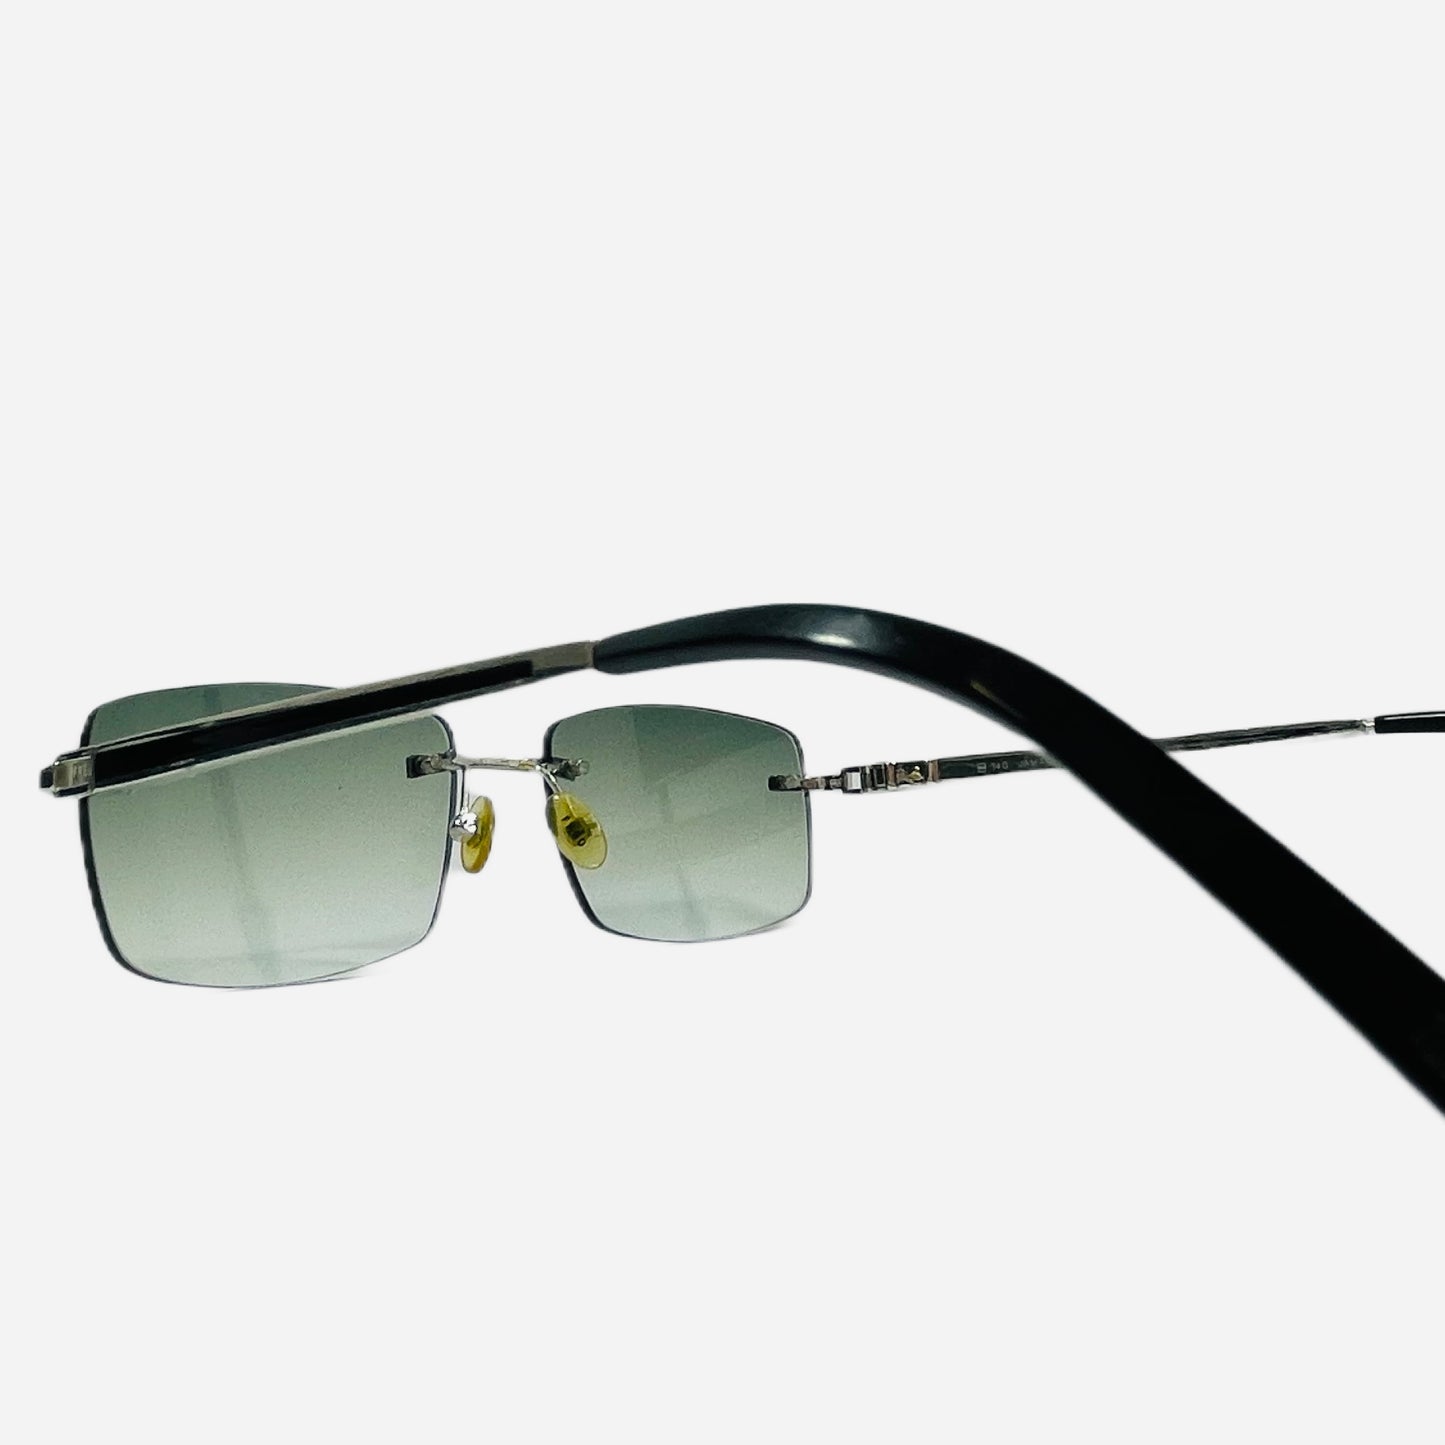 Fred-Paris-Sonnenbrille-Sunglasses-Jamaique-rimless-rahmenlose-Sonnenbrille-the-seekers-back-detail